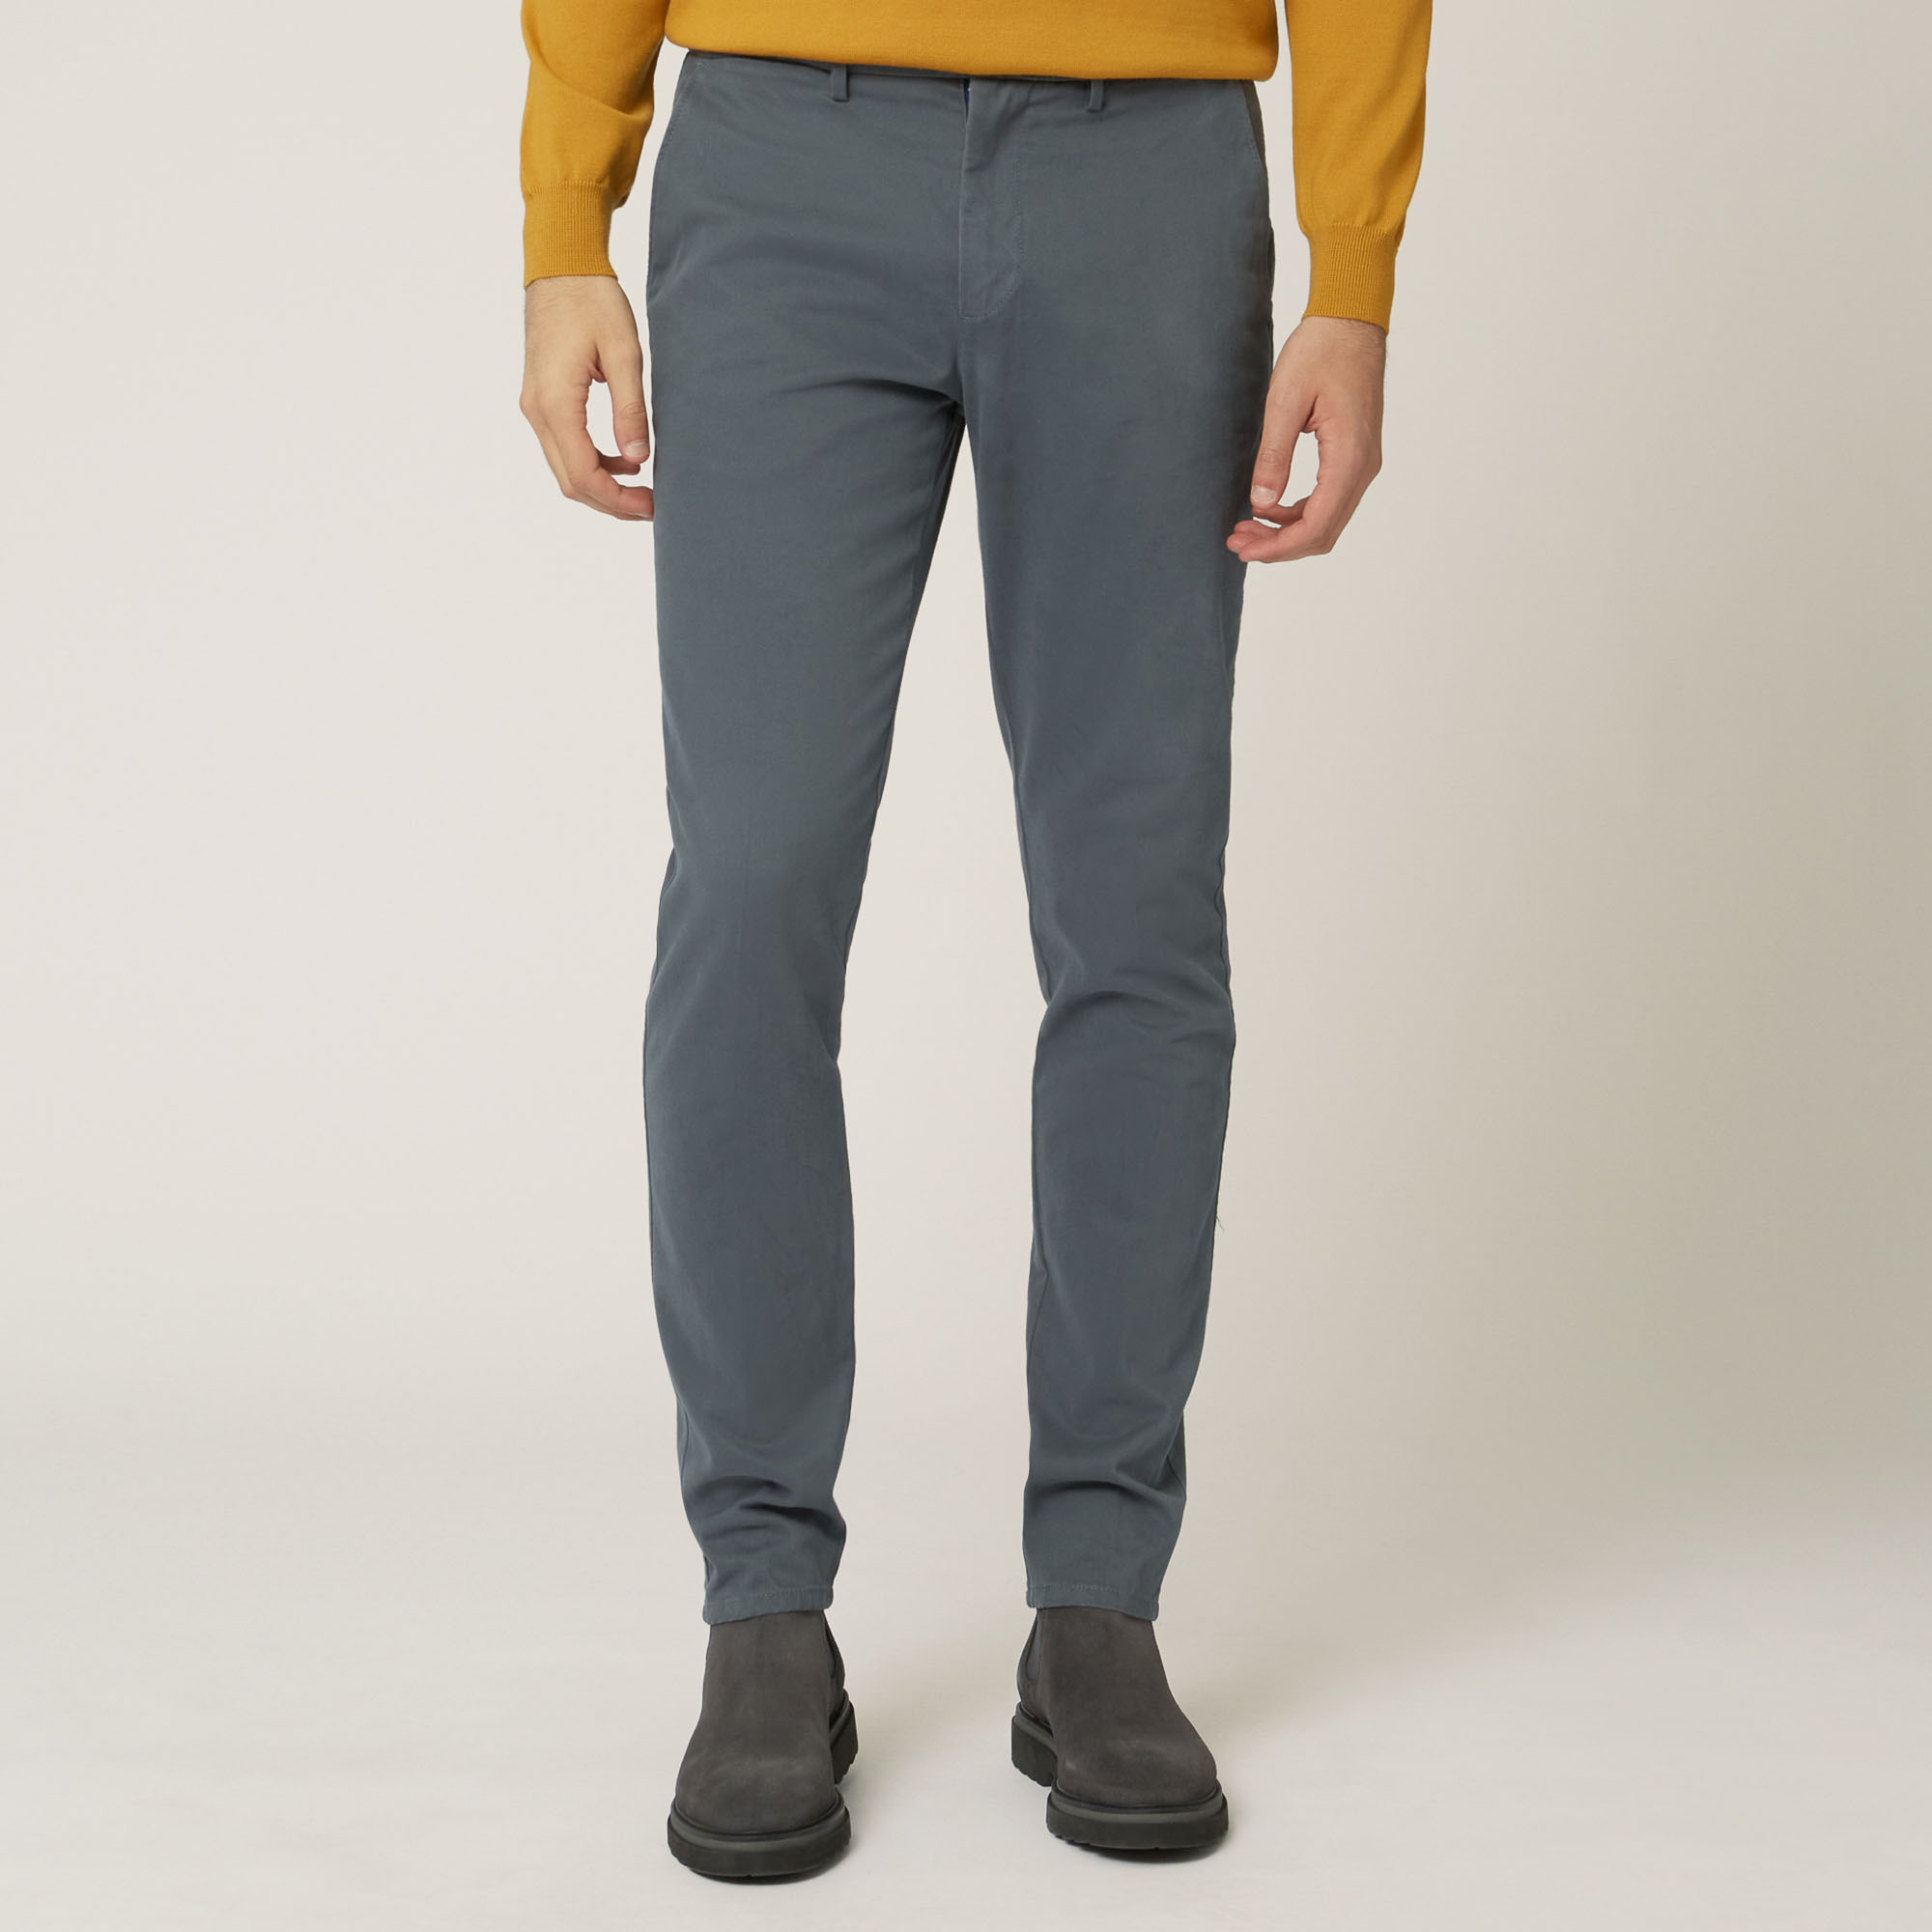 Pantalone Chino In Cotone Stretch Progetto Prisma, Grigio, large